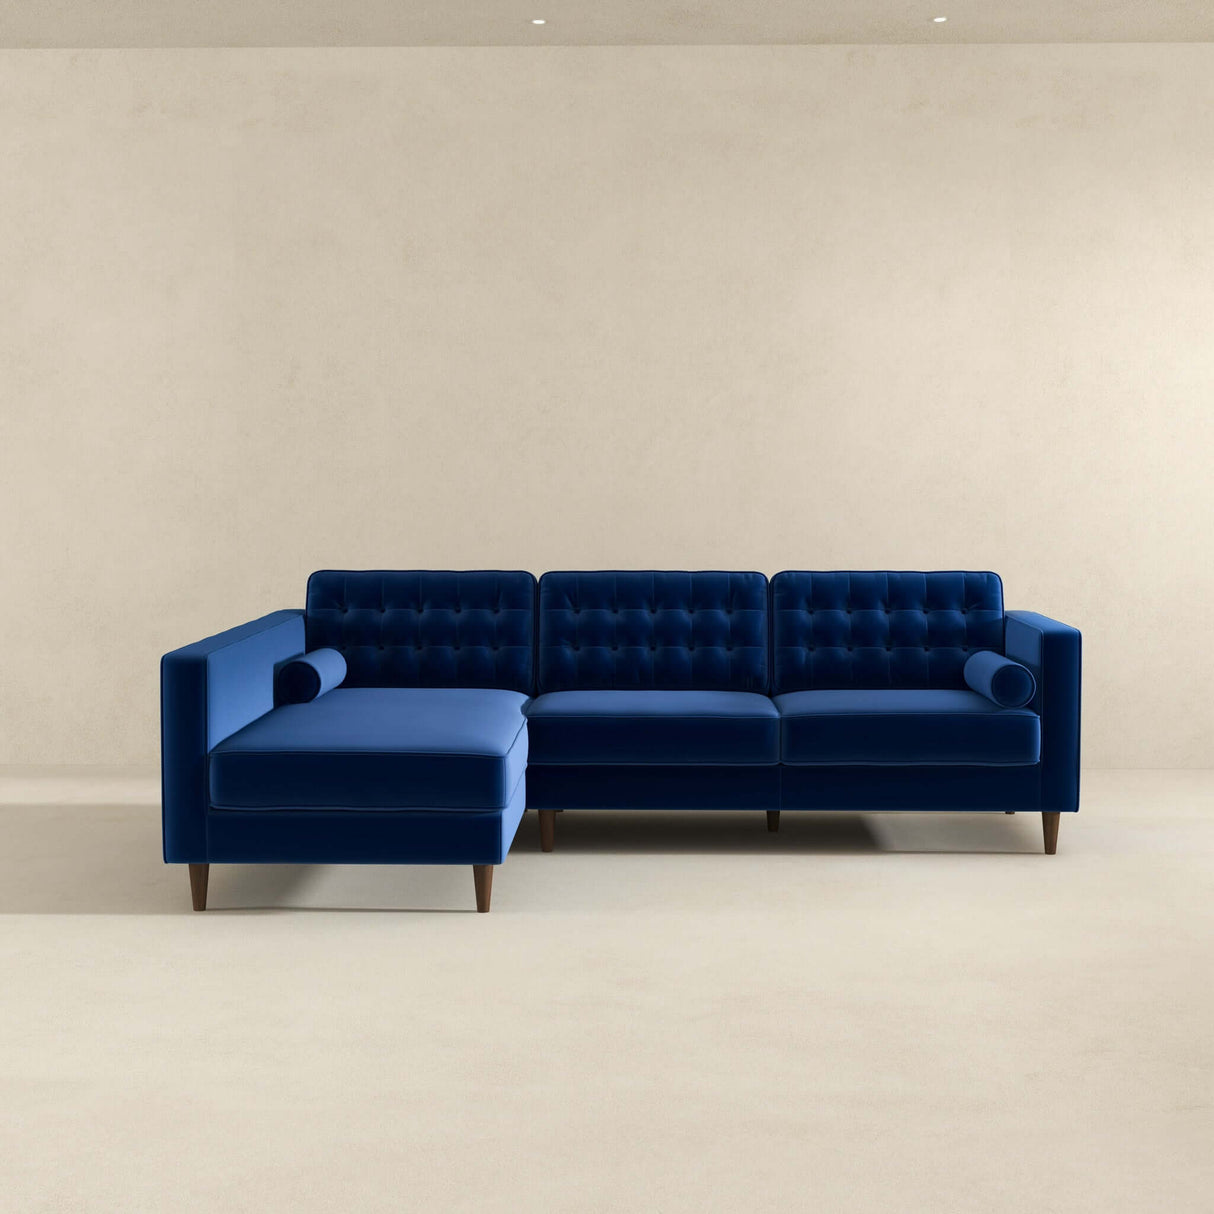 Christian Mid-Century Modern Blue Velvet Sectional Sofa Blue / Right Facing